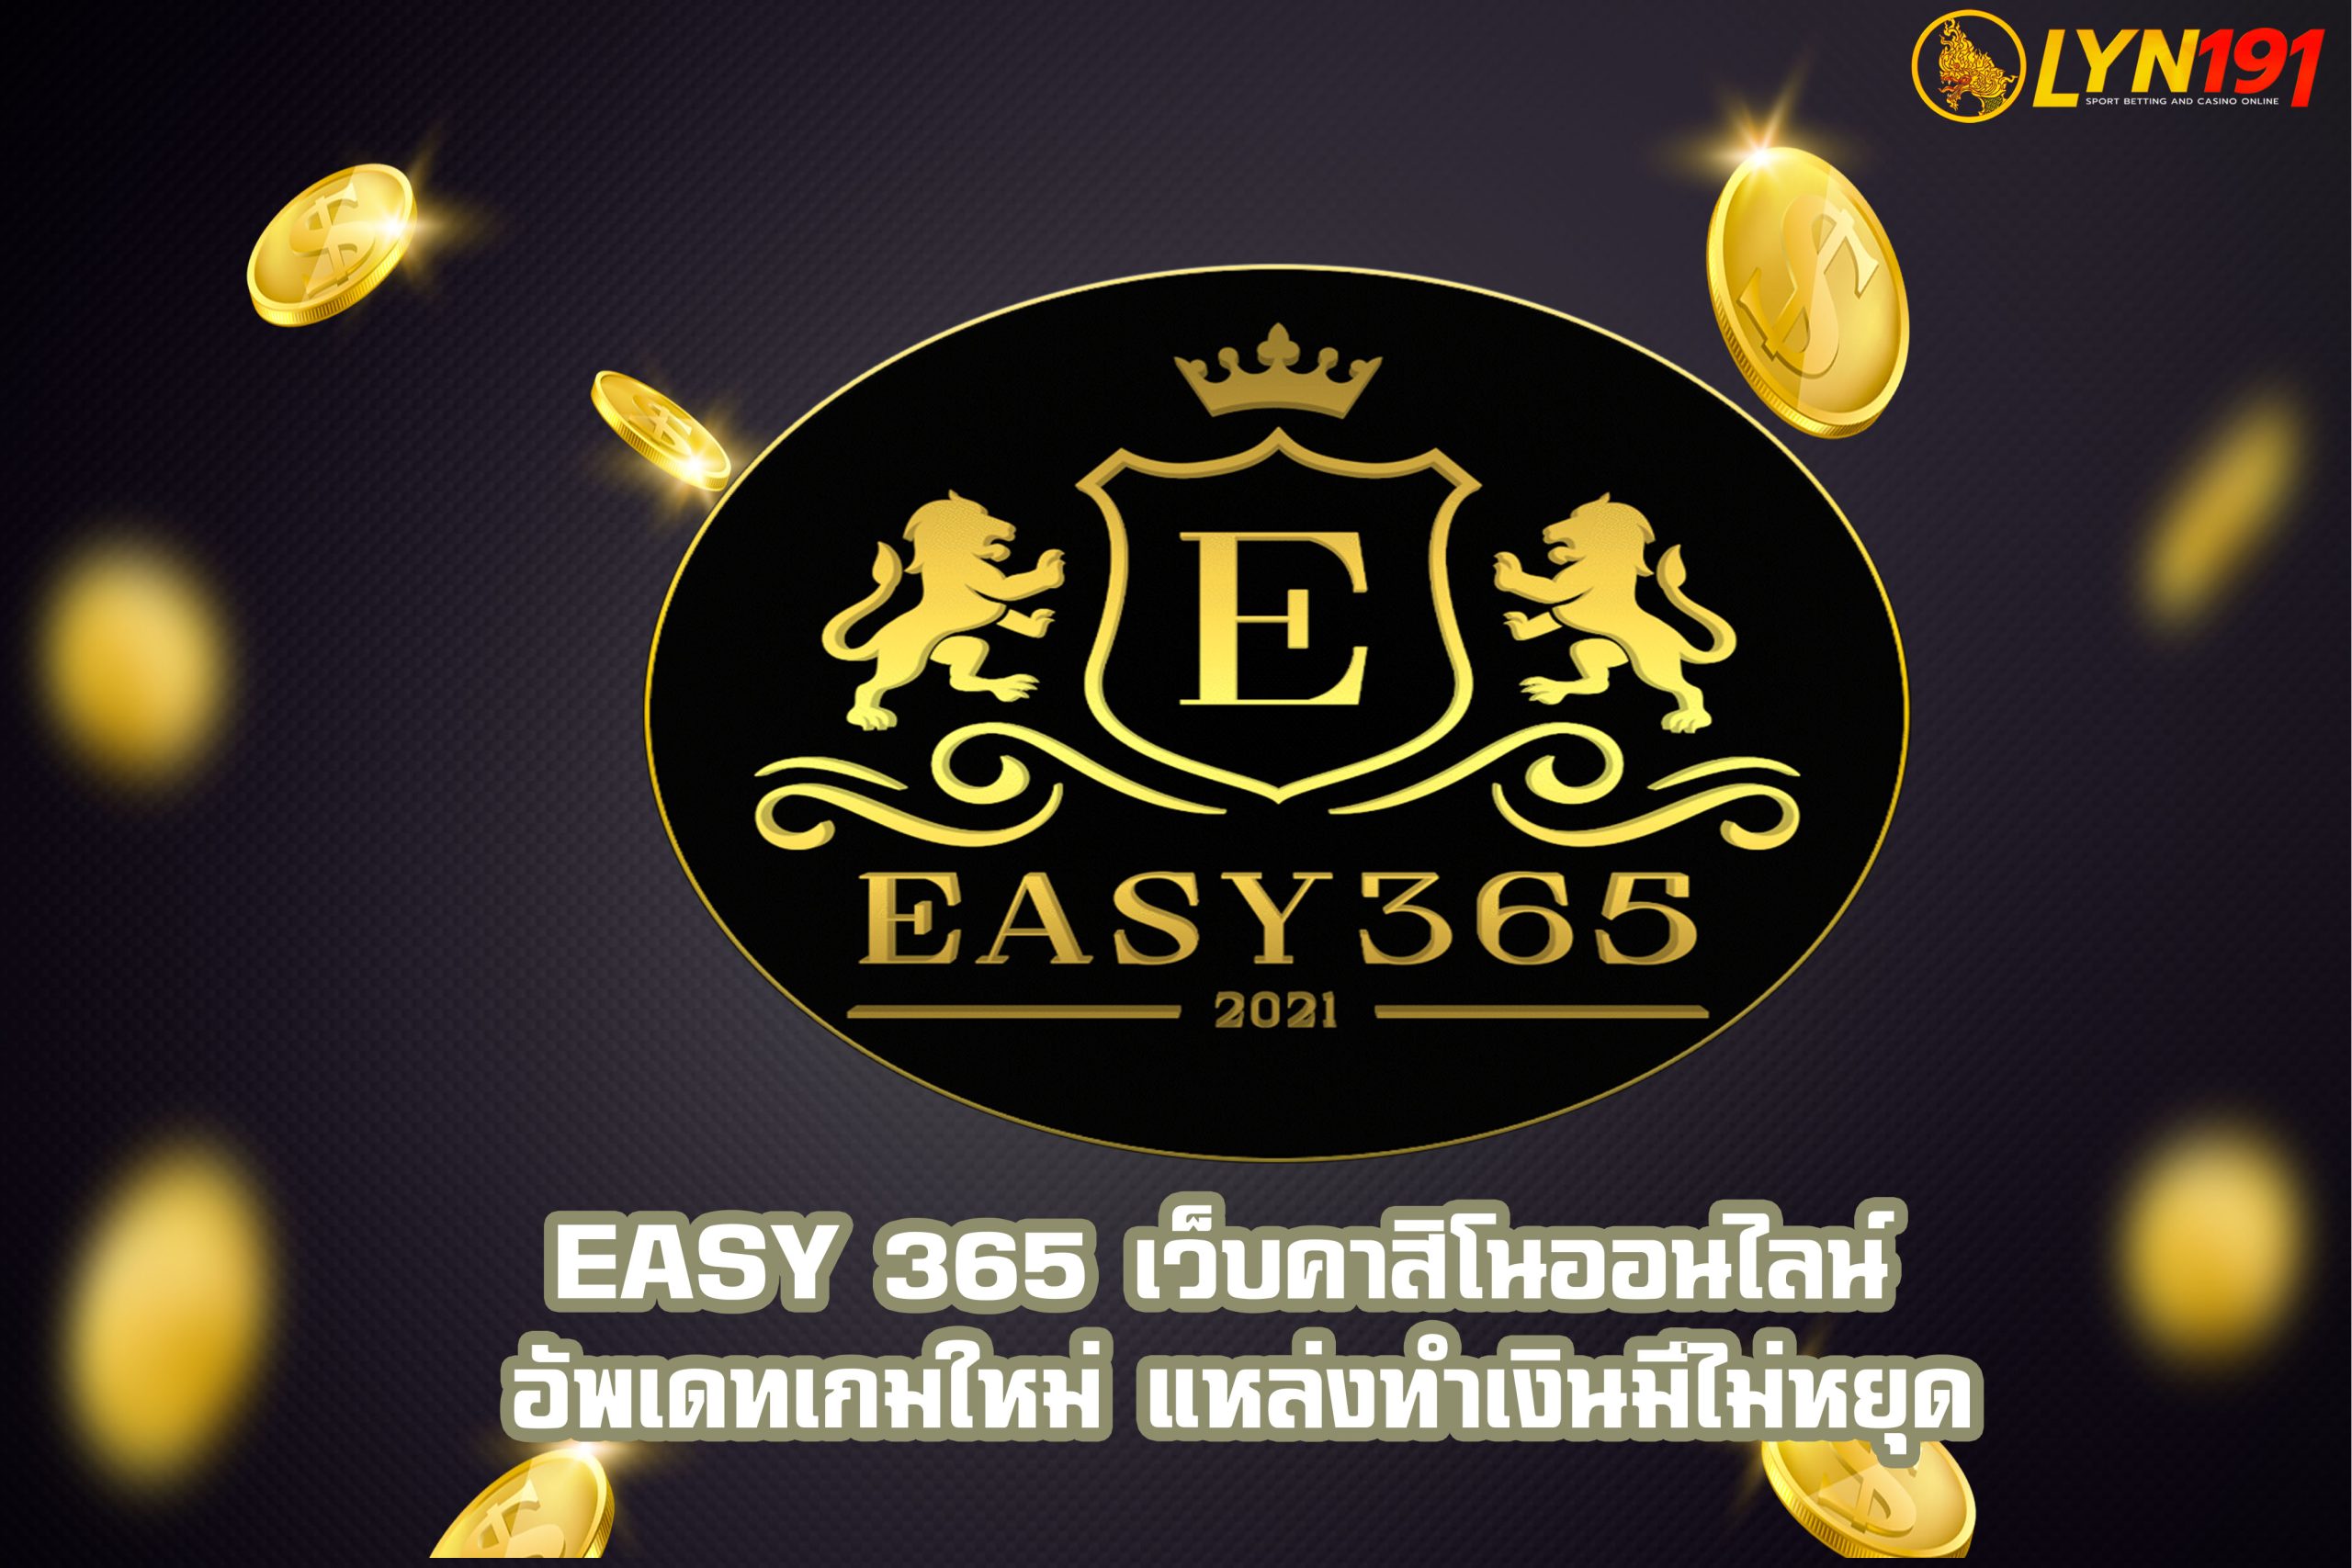 easy 365 เว็บคาสิโนออนไลน์ อัพเดทเกมใหม่ แหล่งทำเงินมีไม่หยุด